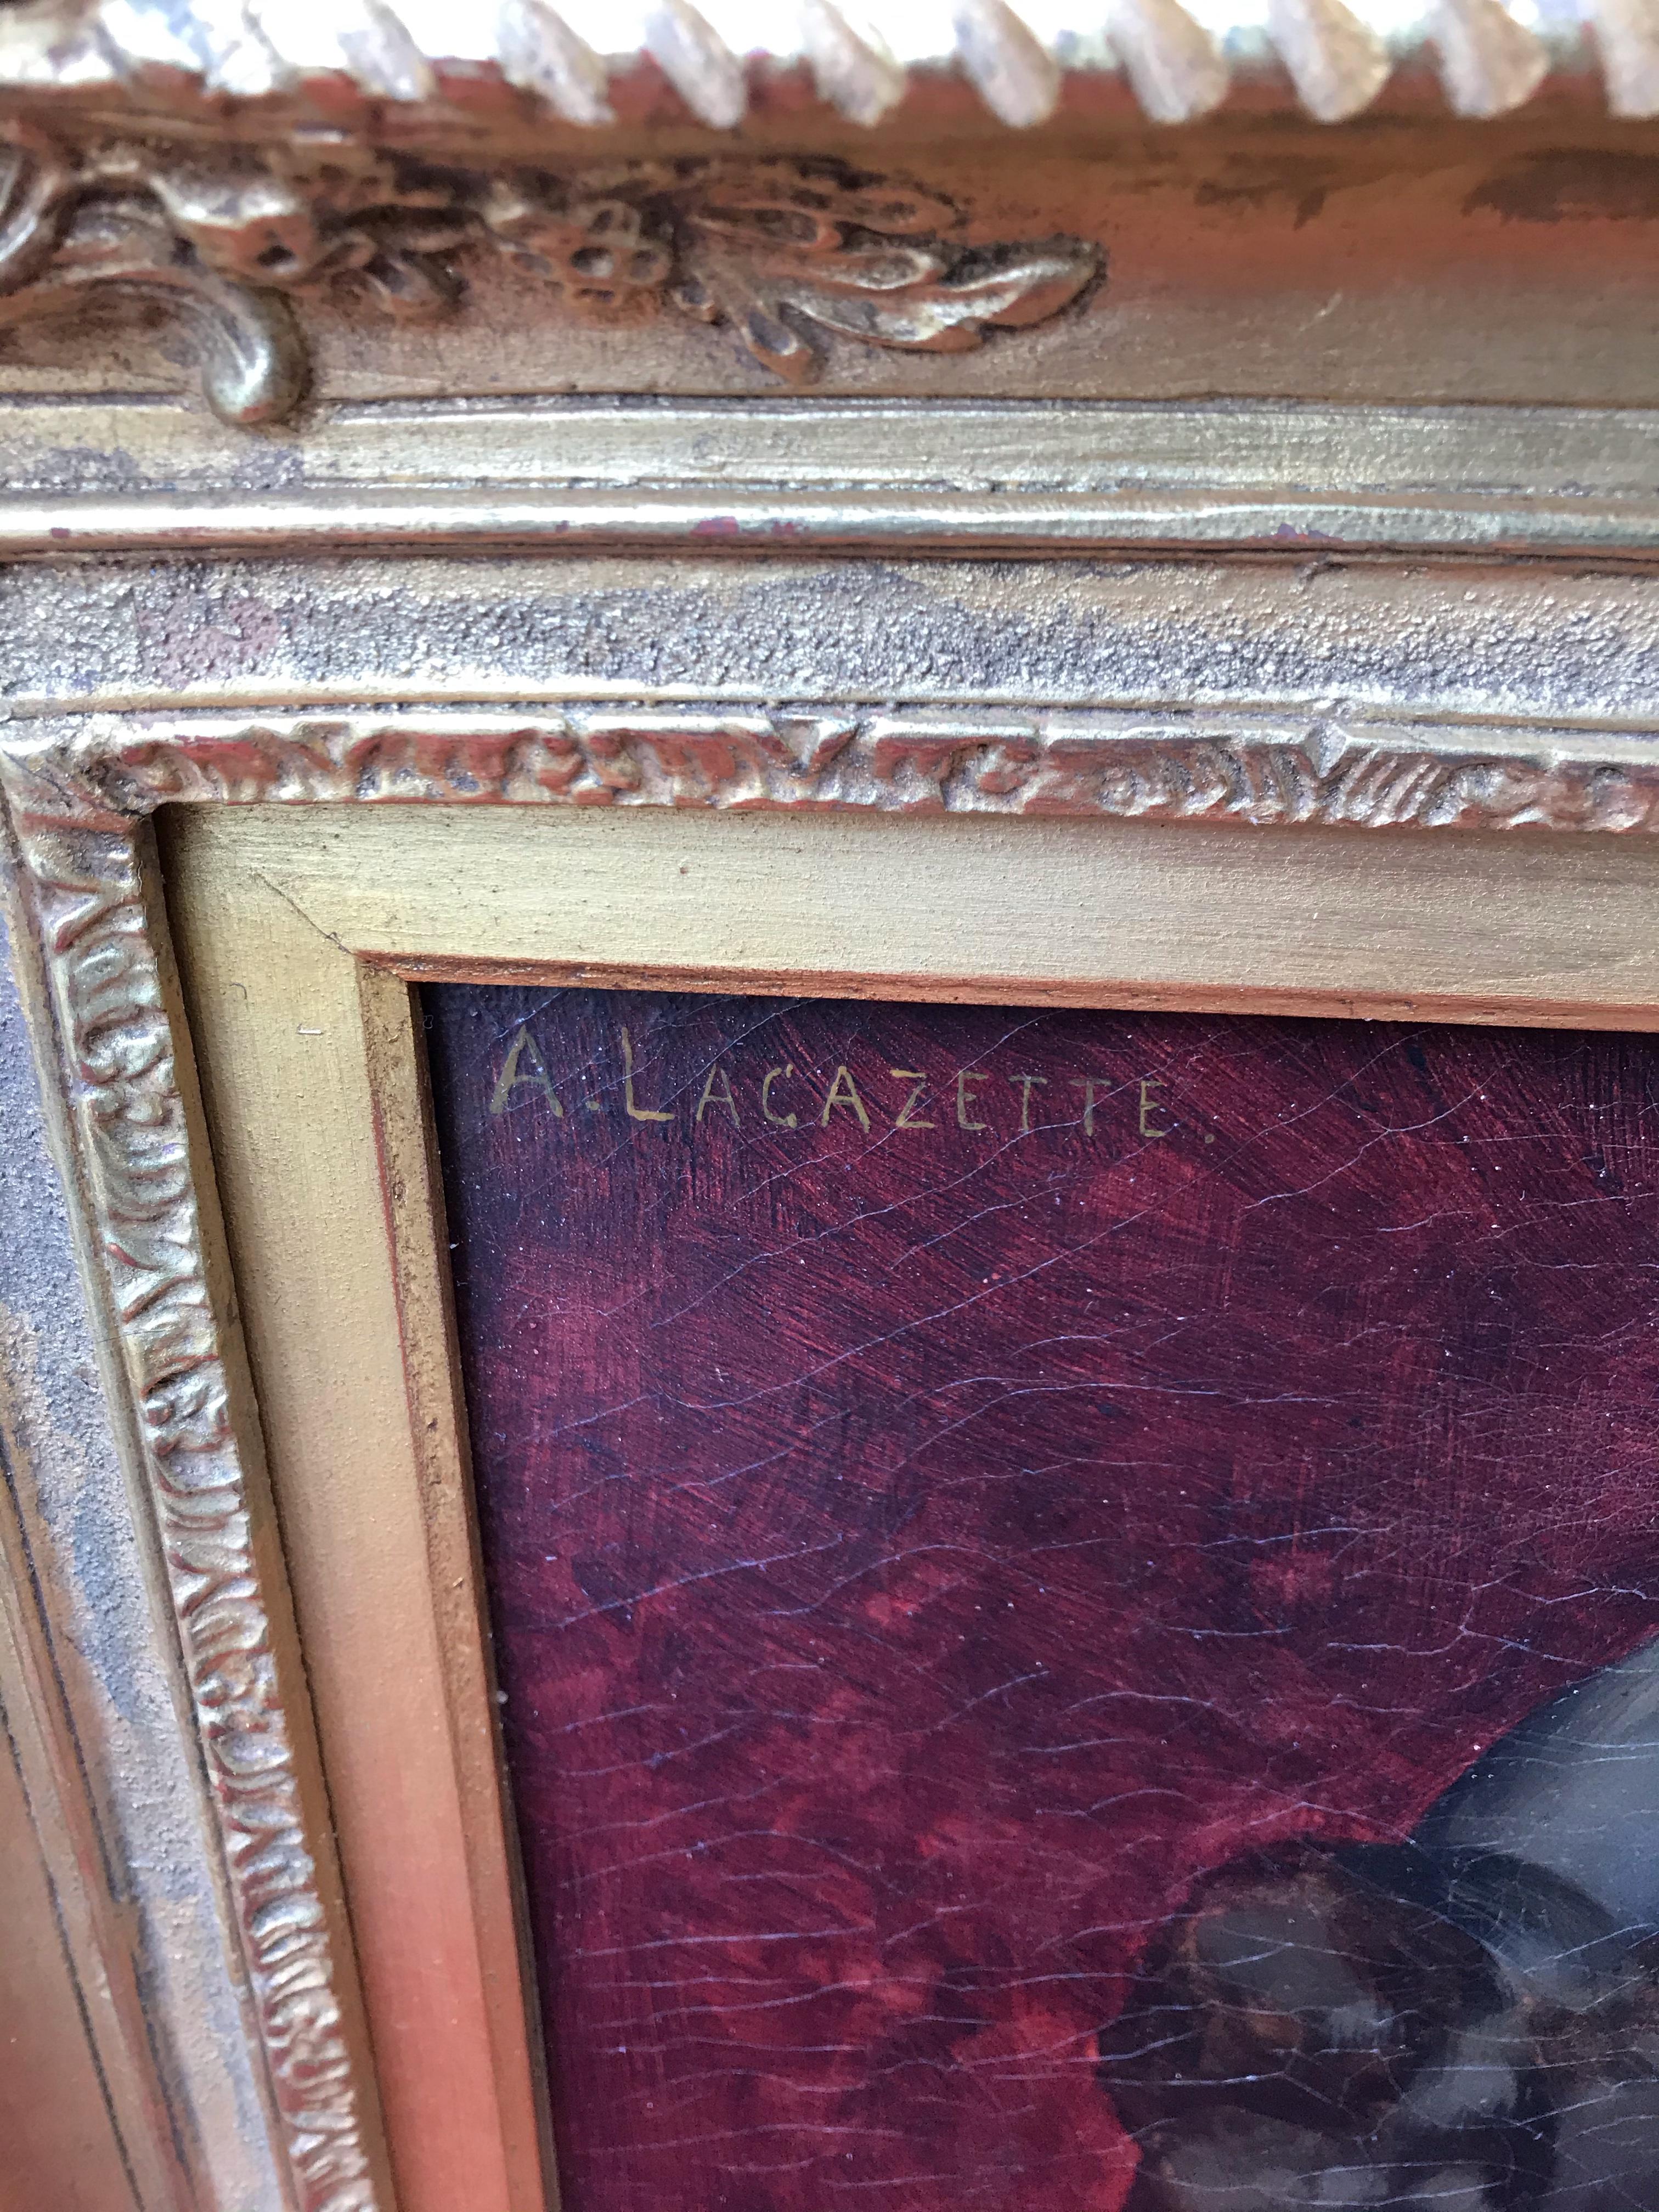 Lacazette Amelie (19.)
Junges Mädchen mit einer Taube
Öl auf Leinwand signiert oben links
Alter Rahmen mit vergoldeten Blättern
Abmessung Leinwand : 56 X 37 cm
Abmessung Rahmen : 74 X 57 cm

Lacazette Amelie (19.) -
Französischer Maler 19.